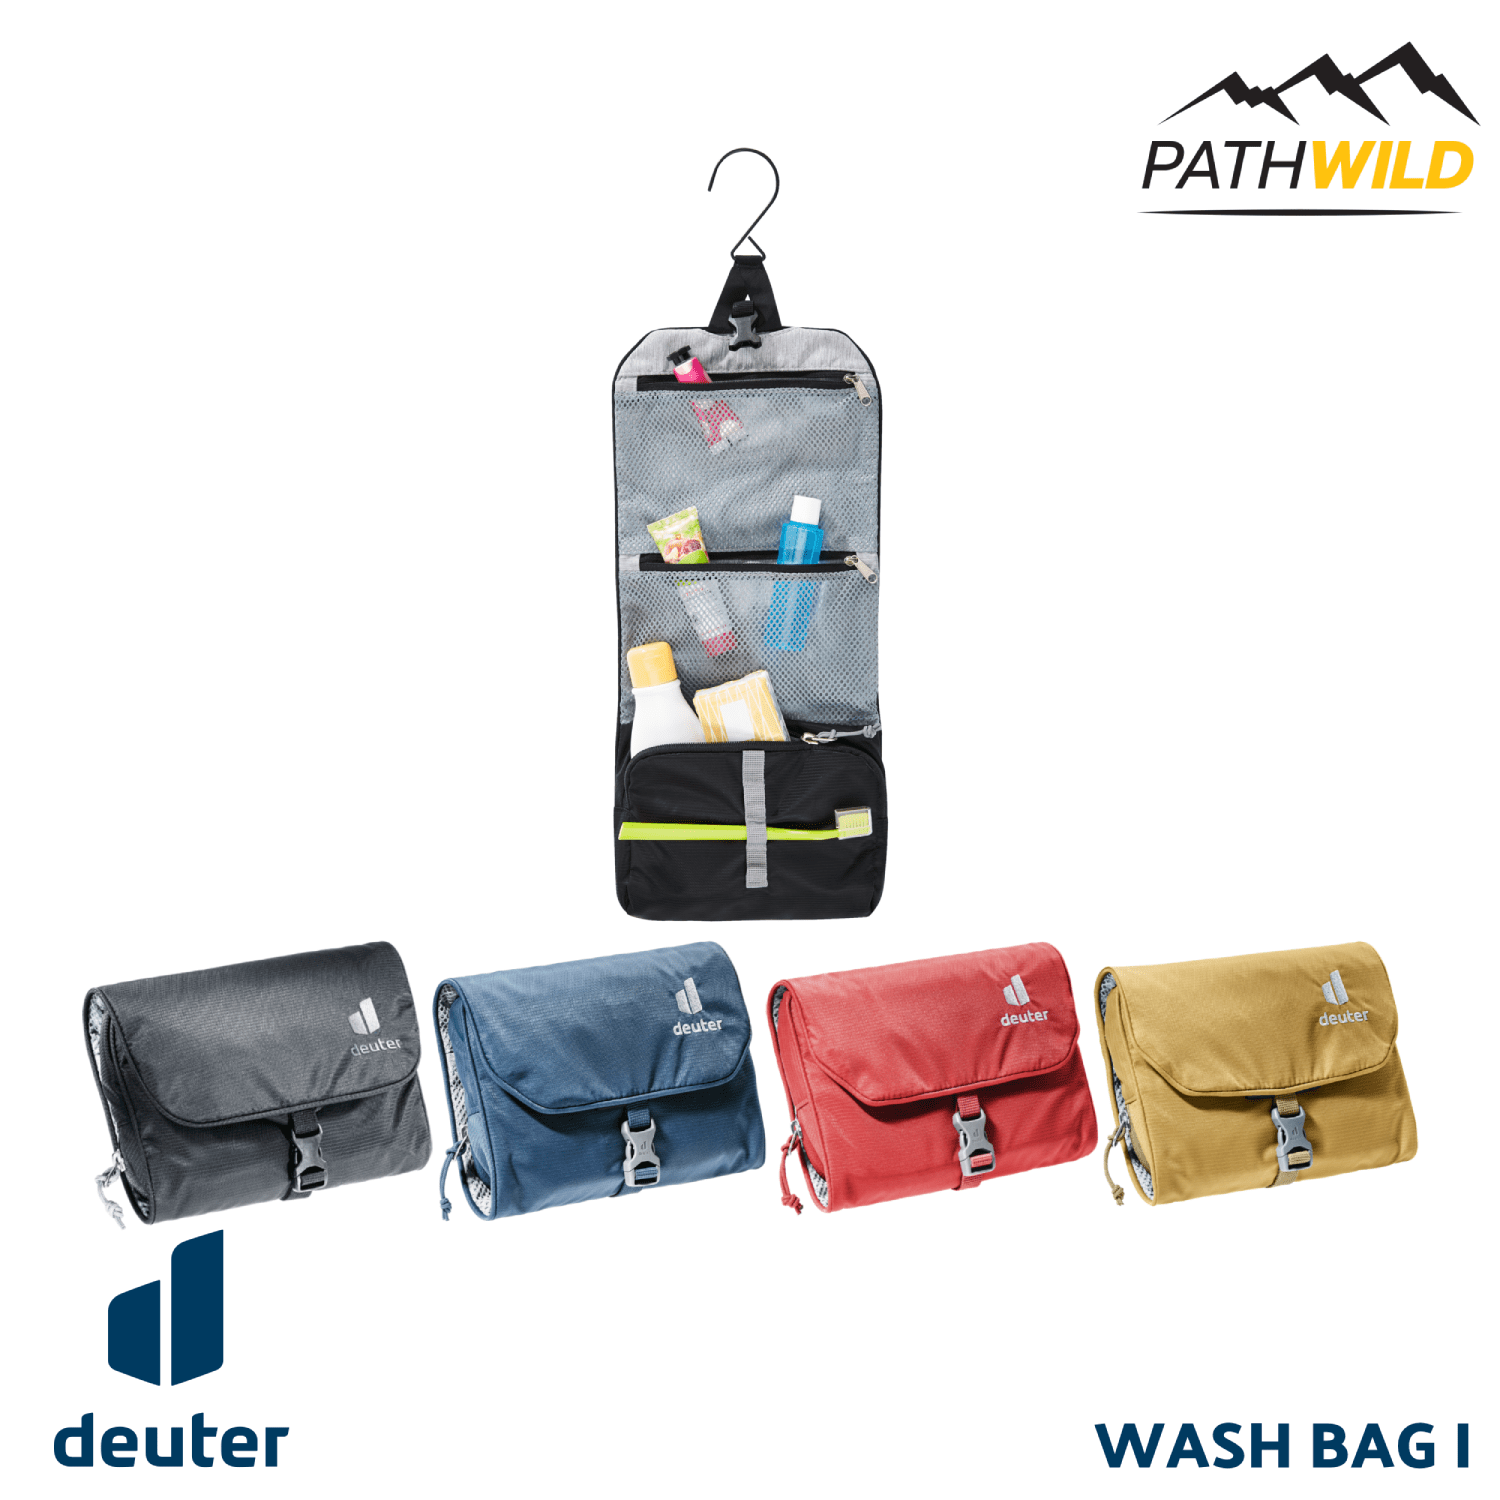 กระเป๋าใส่อาบน้ำ กระเเป๋าใส่ของอาบาน้ำ DEUTER กระเป๋าใส่อุปกรณ์อาบน้ำ ซื้อที่ไหน